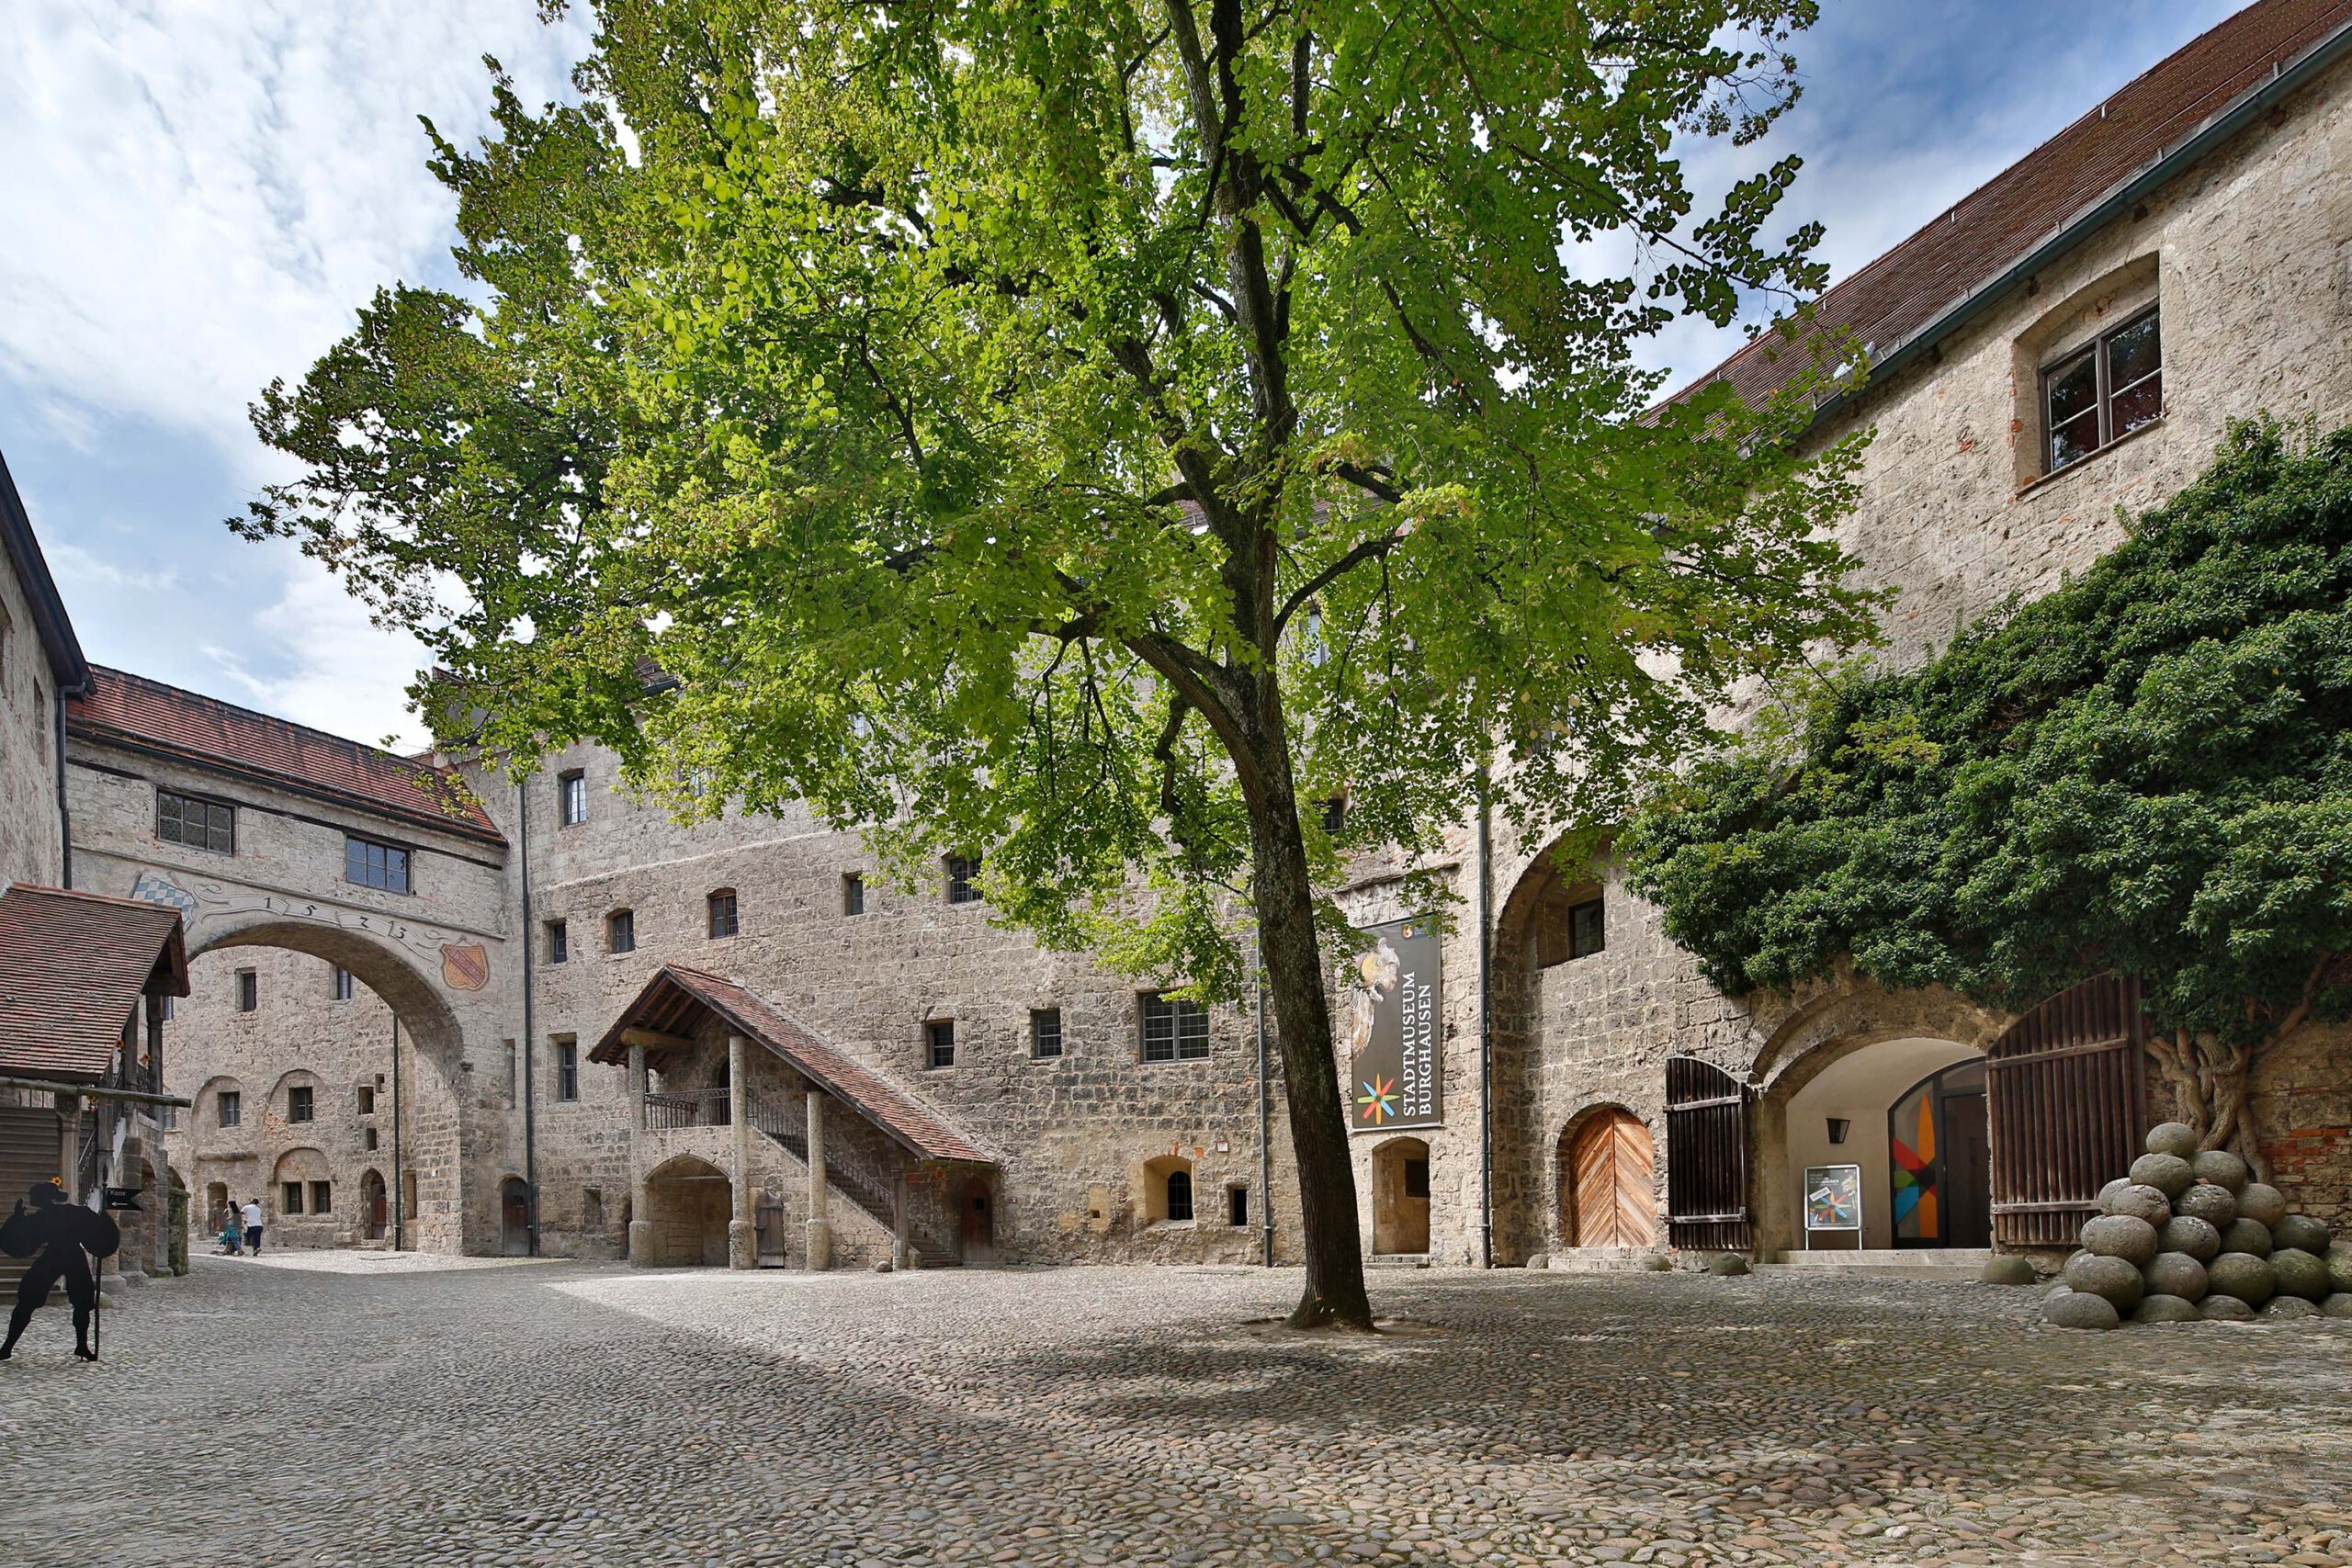 Innenhof einer Burg aus Stein. In der Mitte des Hofs steht ein Baum. Rechts ist ein Eingang mit einem Plakat Stadtmuseum Burghausen.